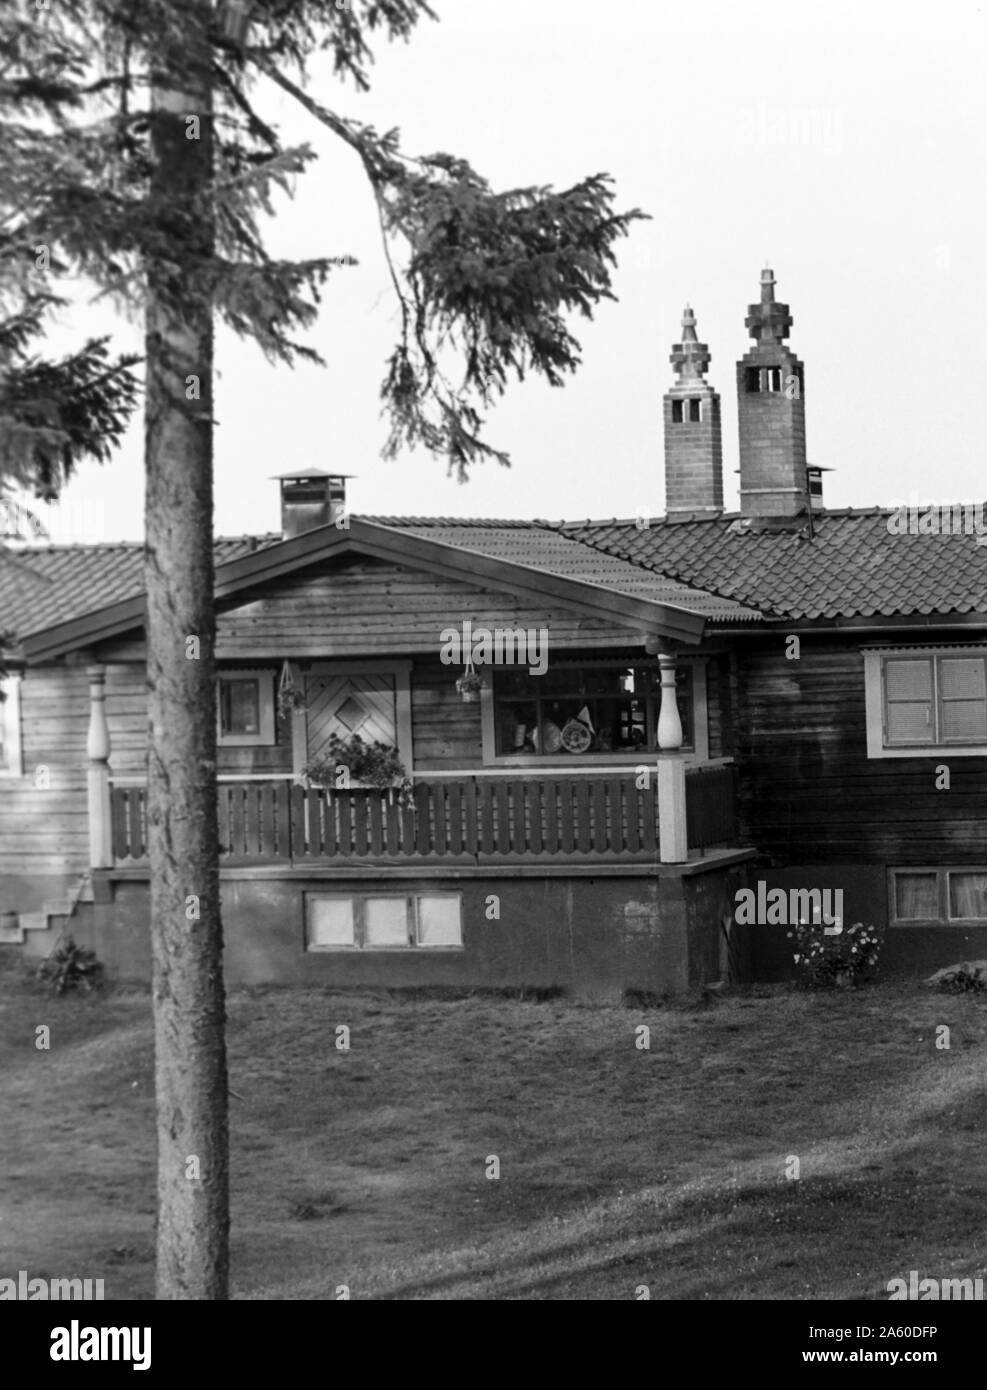 Haus am Berg, Siljansnäs, Schweden, 1969. Maison sur la montagne, de la Suède, 1969, Siljansnäs. Banque D'Images